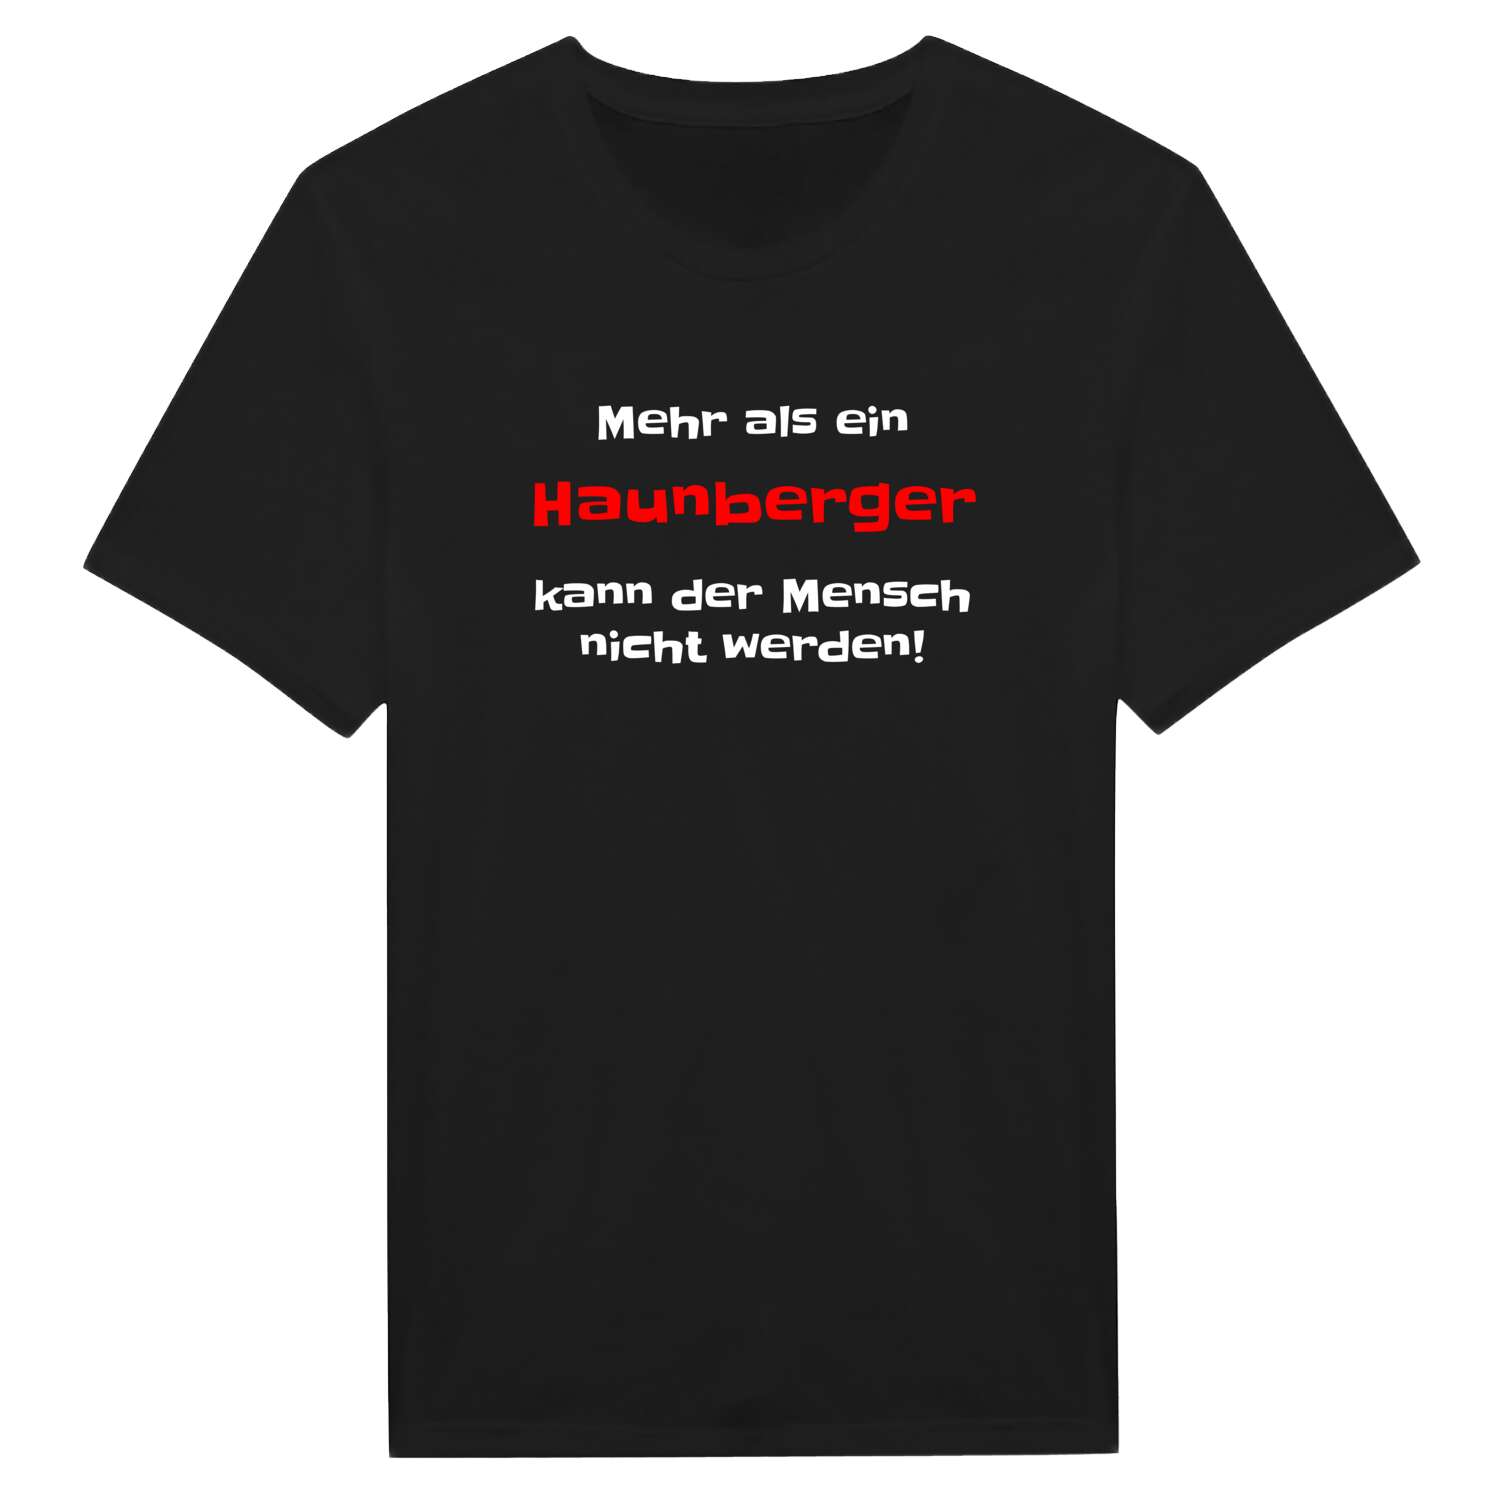 Haunberg T-Shirt »Mehr als ein«